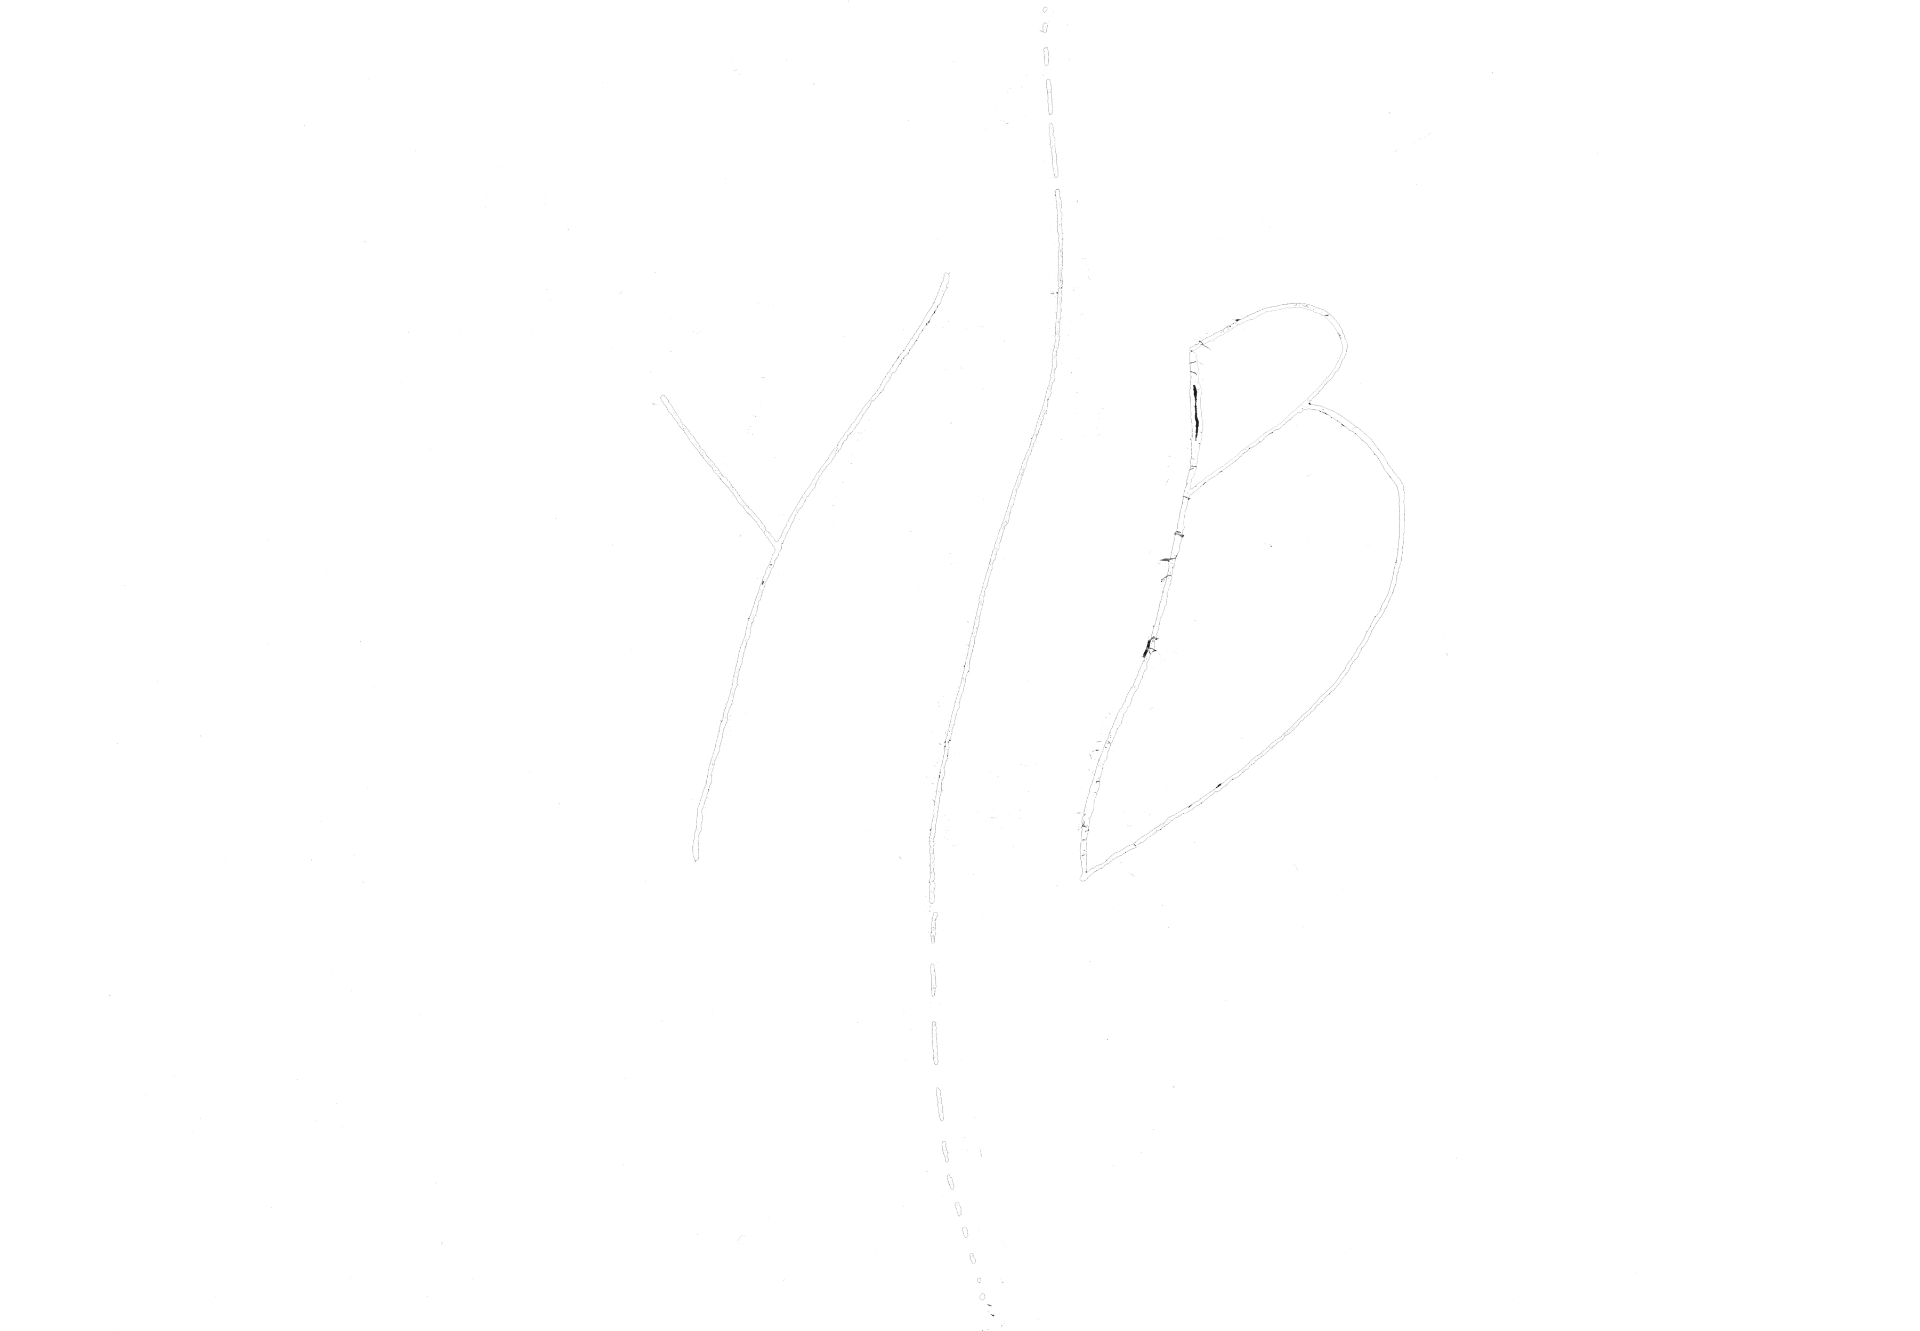 YIB